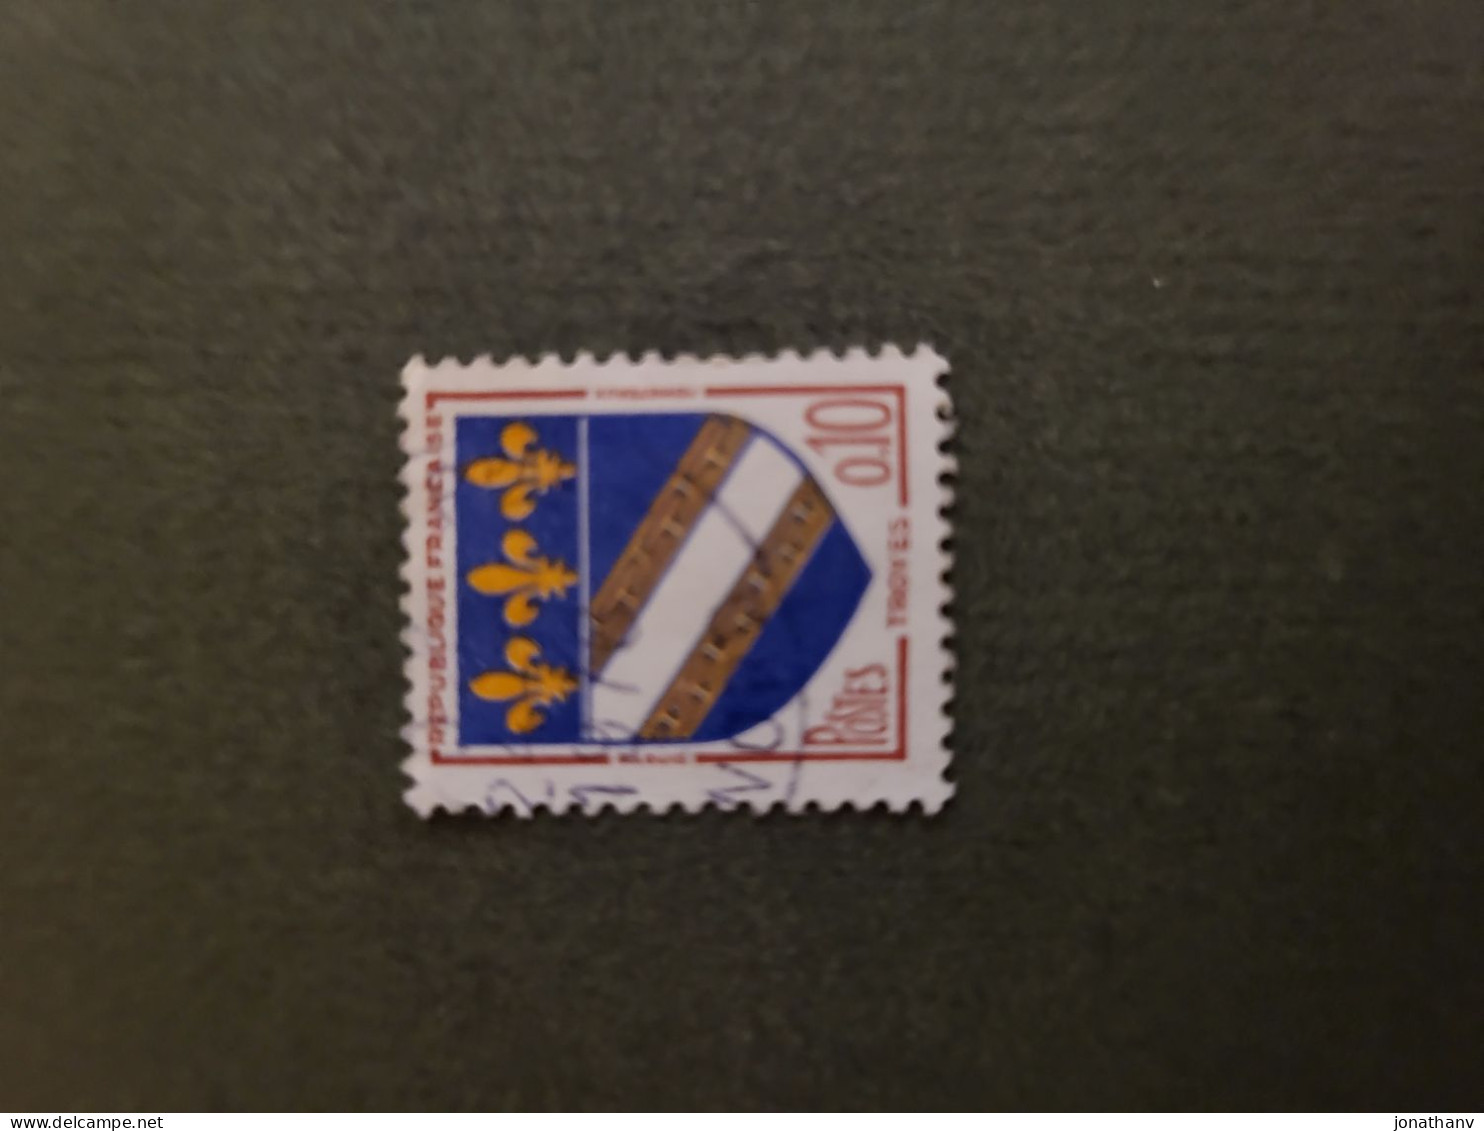 TIMBRE BLASON DE TROYES 1963 FRANCE, EXCEPTIONNEL PANACHE DE COULEURS - Used Stamps